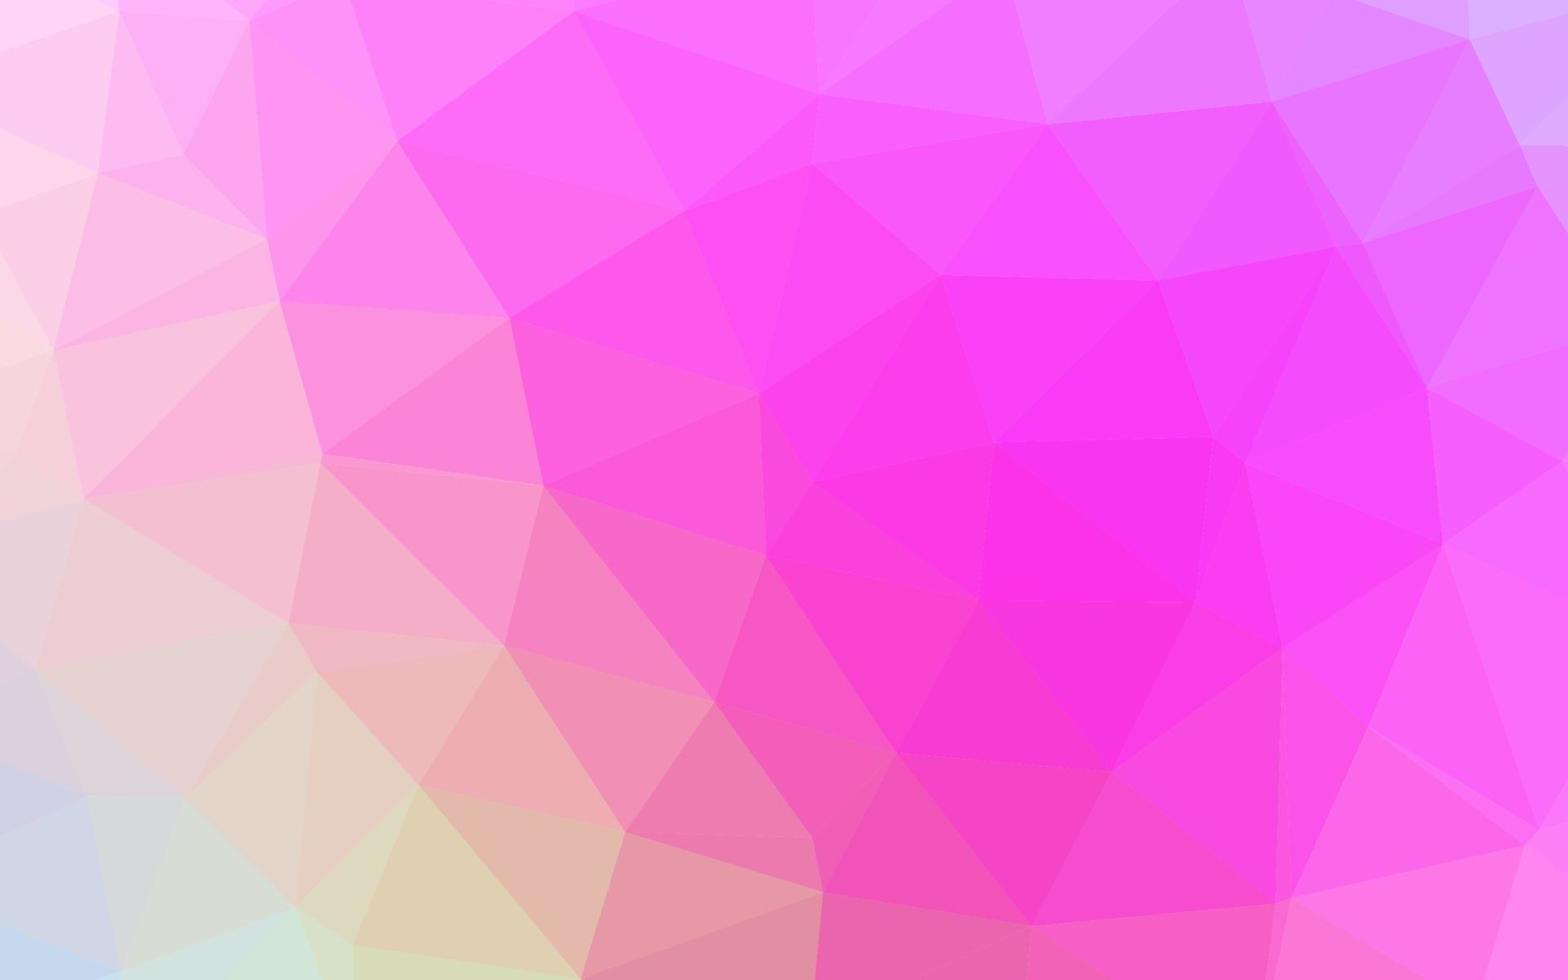 padrão poligonal de vetor rosa claro.